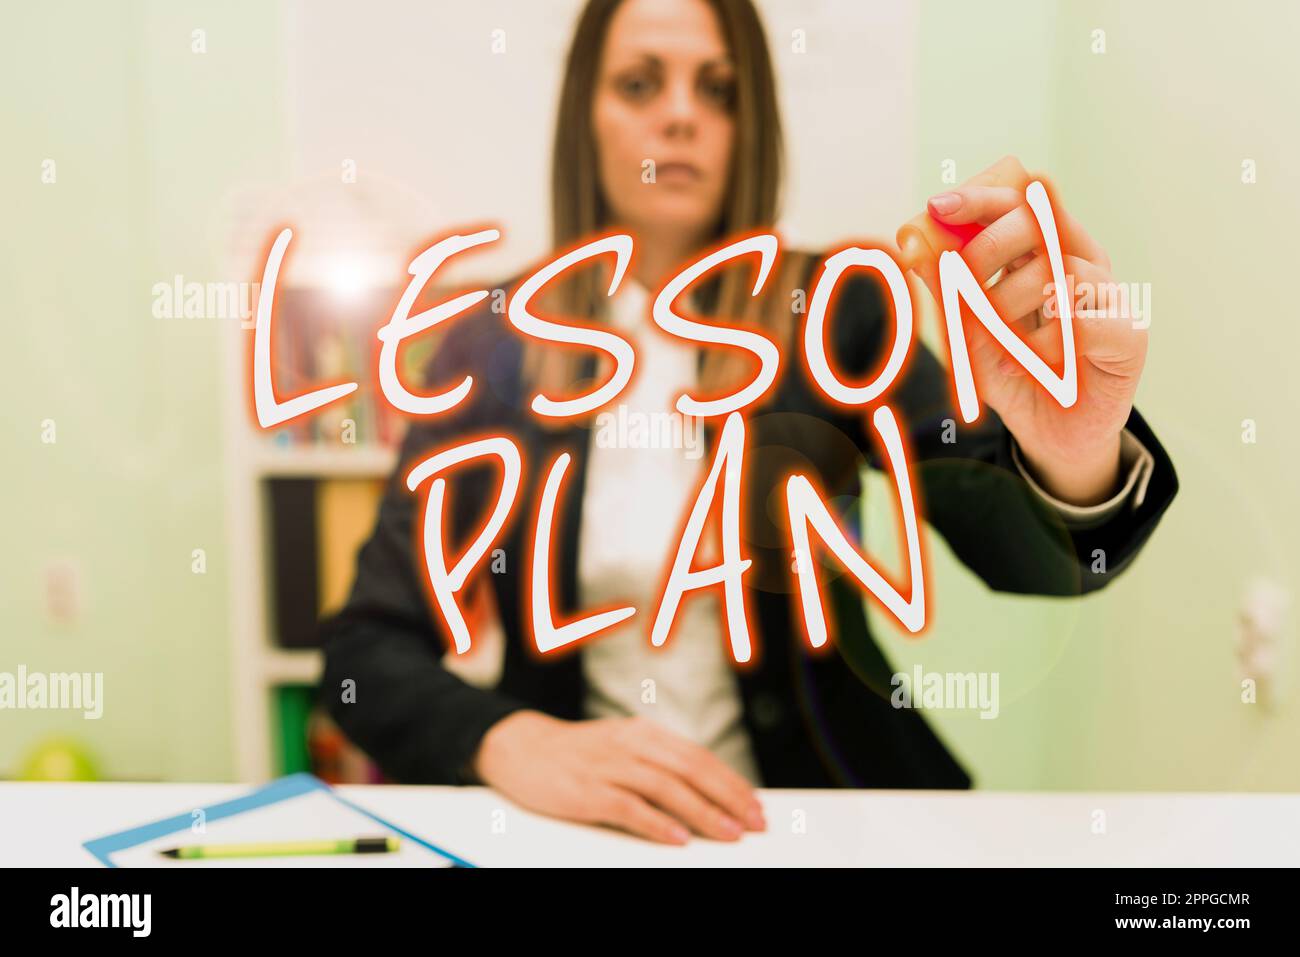 Unterschreiben Sie, um den Lesson Plan anzuzeigen. Konzept, das die detaillierte Beschreibung des Unterrichts durch einen Lehrer bedeutet Stockfoto